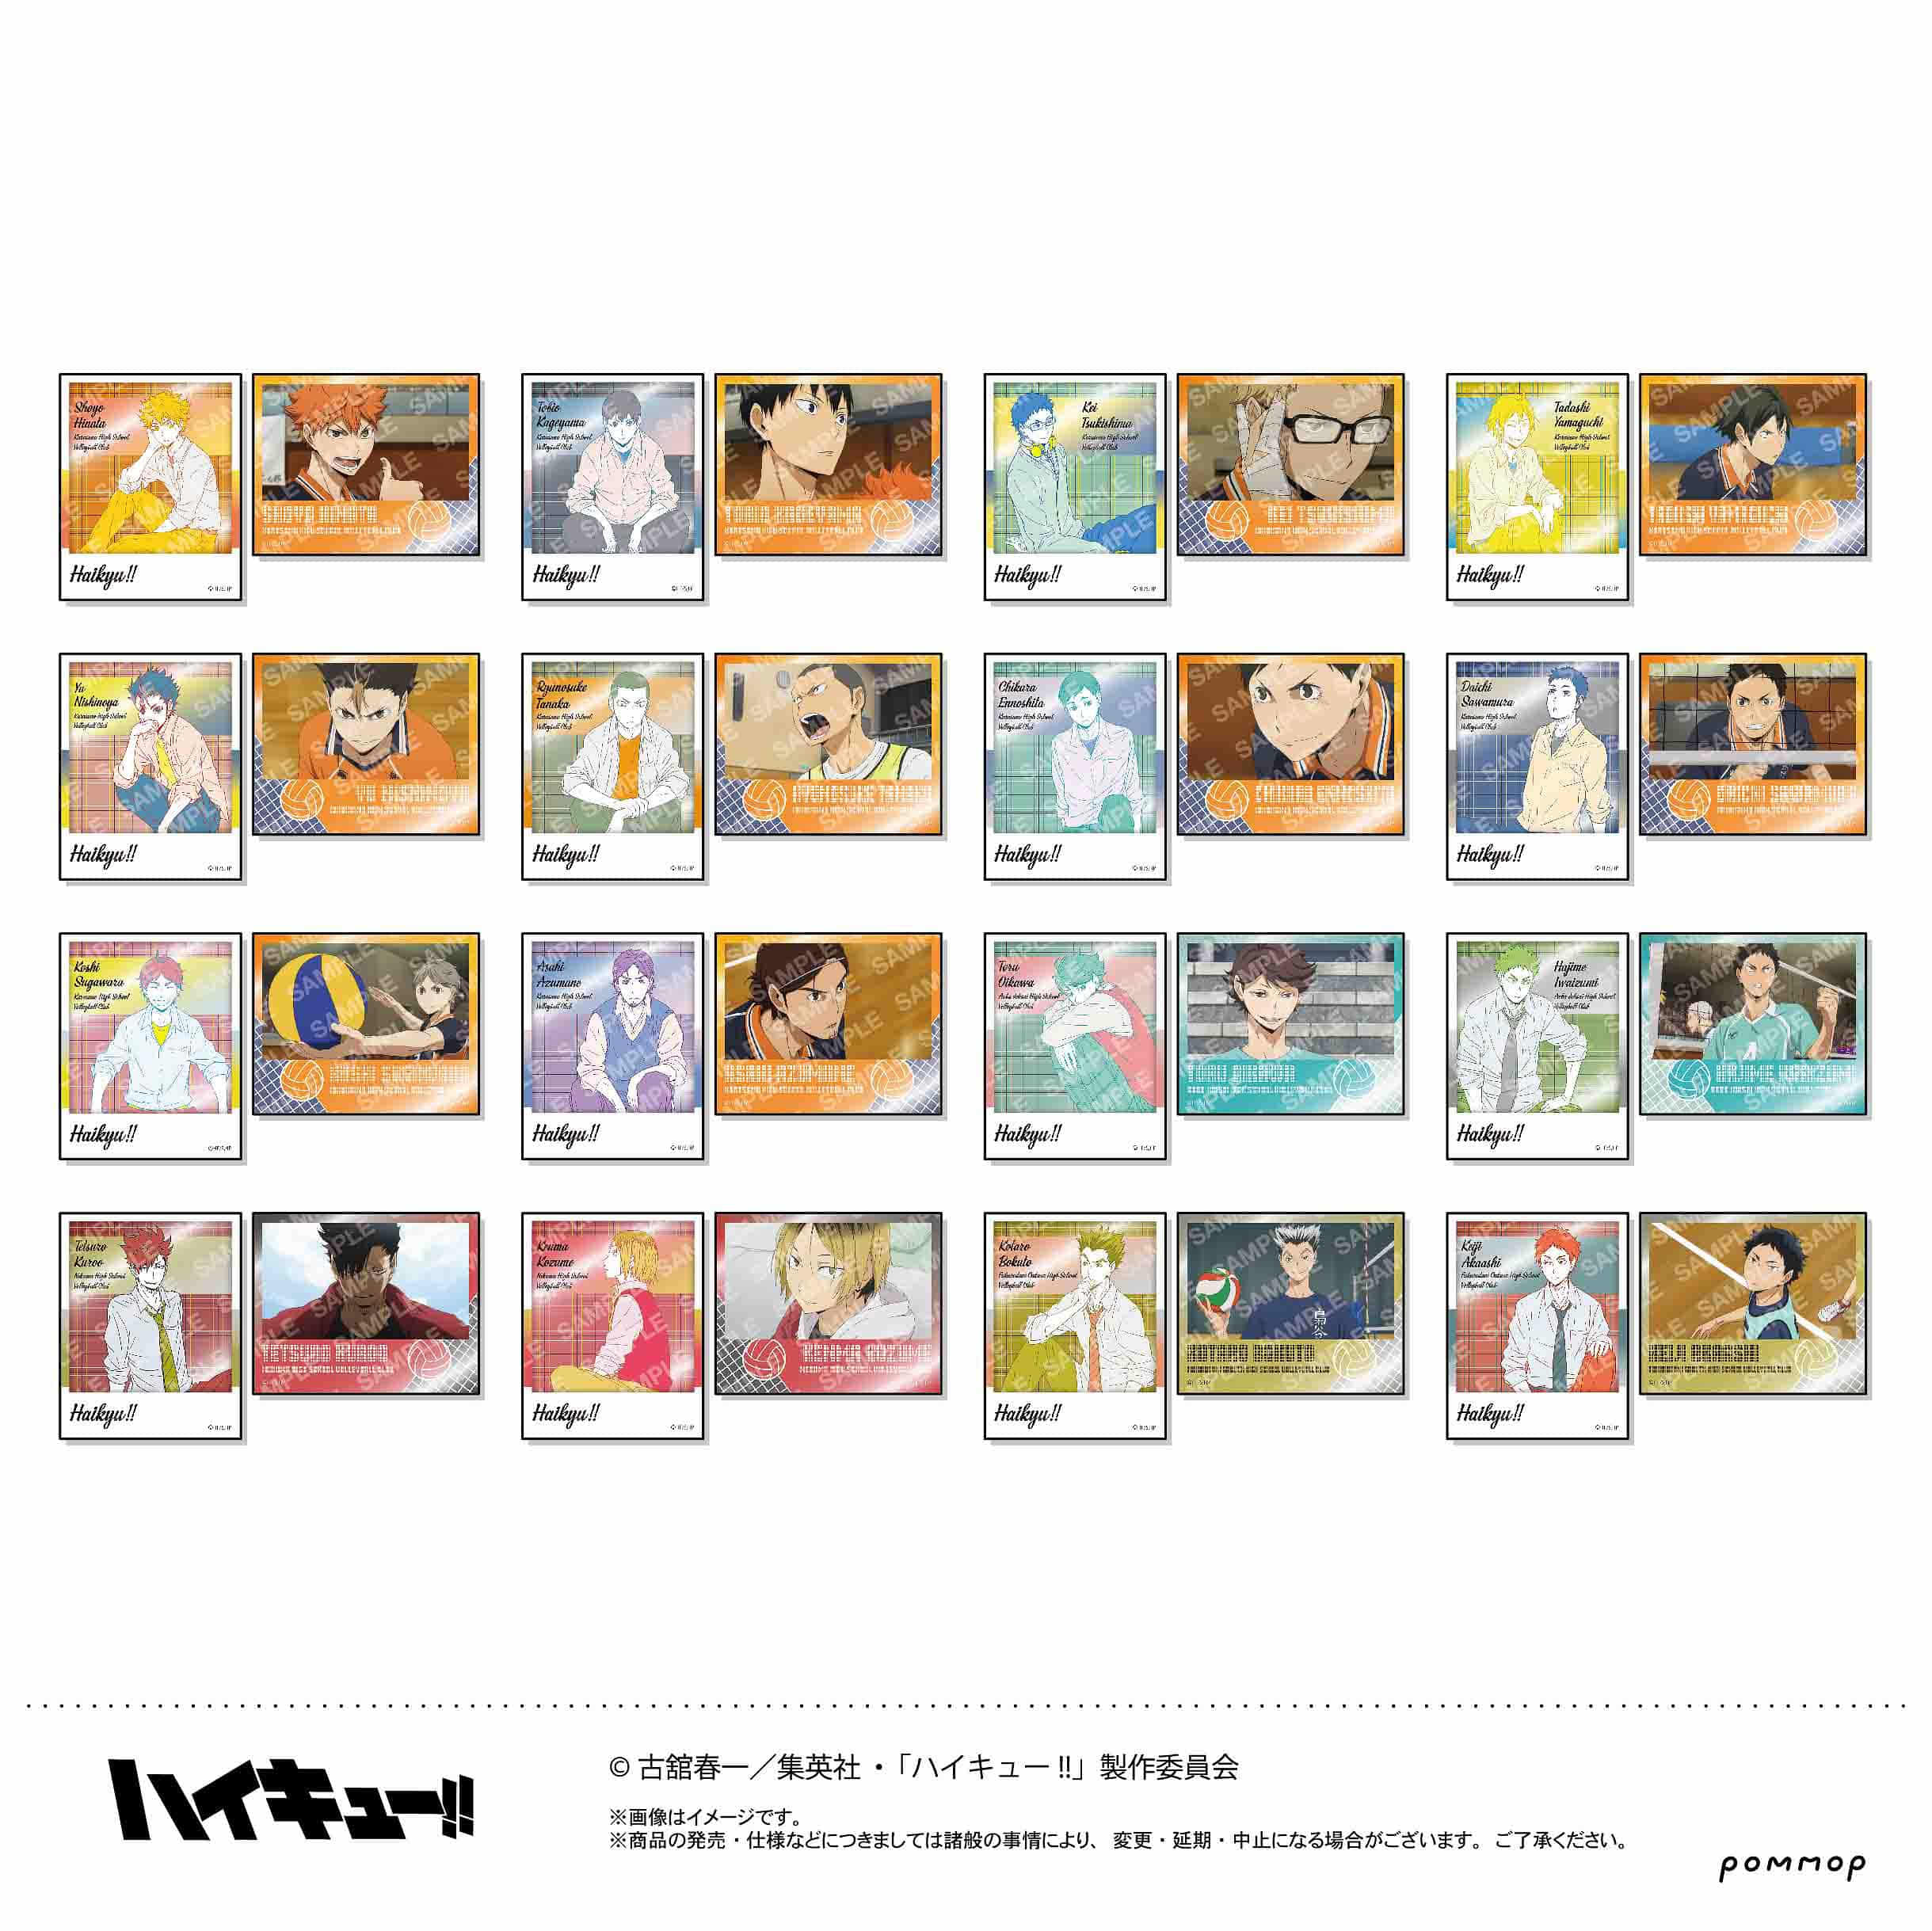 [입고완료] 쇼와노트 하이큐 오프샷×컬러 포토풍 메탈 스티커 컬렉션 제 1탄 (전 32종/세트판매) (굿즈)